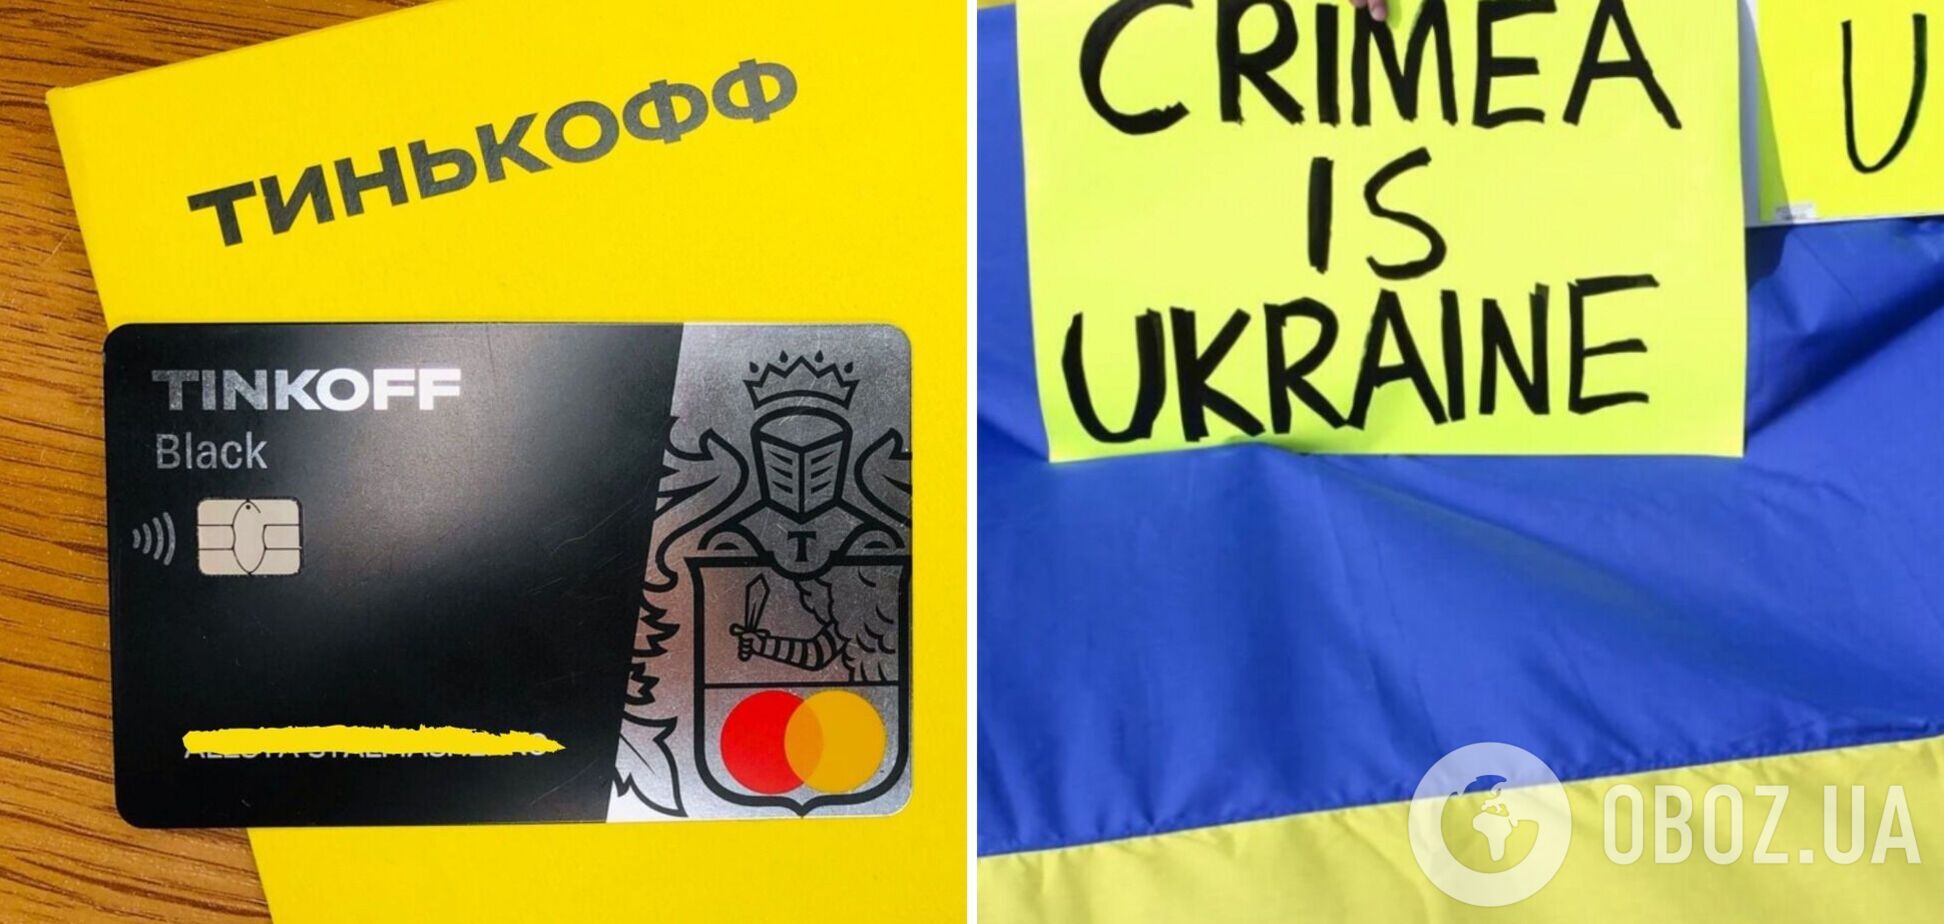 'Тікофф банк' опосередковано визнав Крим українським